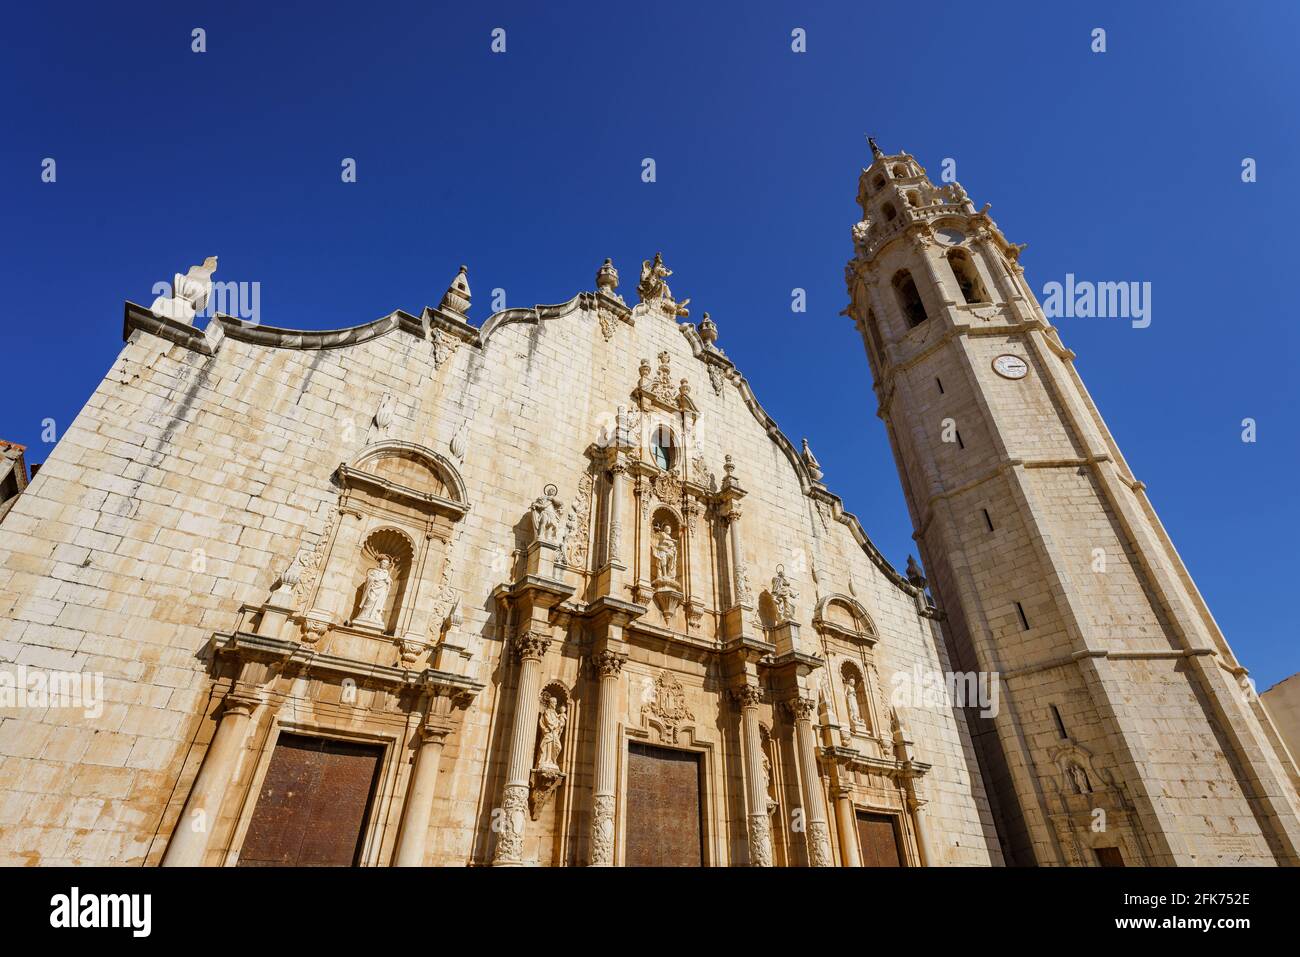 Alcala de Xivert, Spagna. Facciata in stile barocco della chiesa di San Juan Bautista e campanile di 68 metri costruito nel 17 ° secolo. Foto Stock